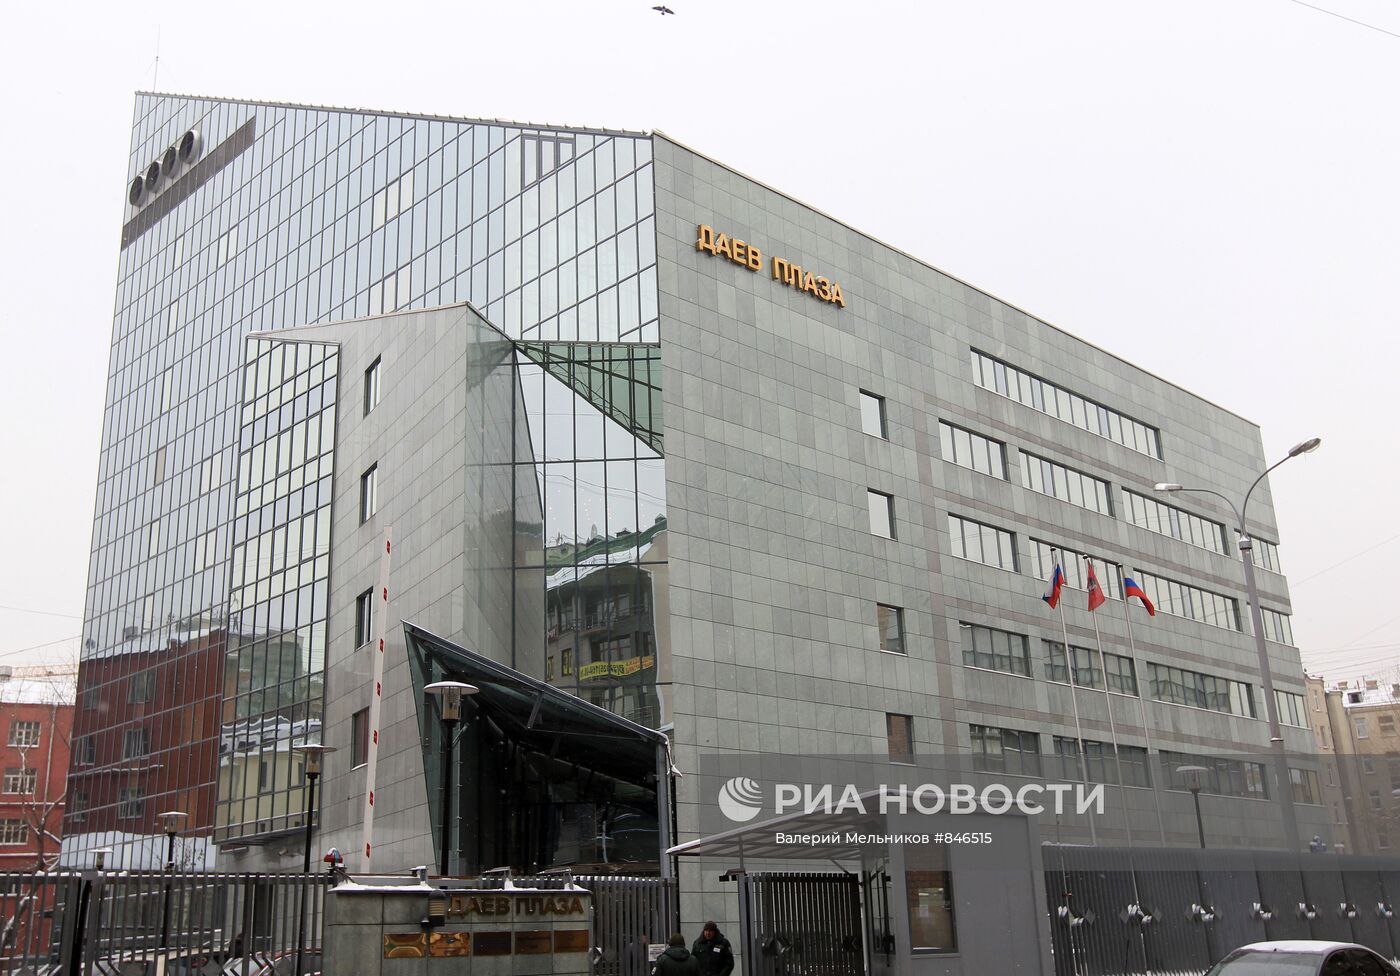 На офисный комплекс "Даев плаза" в Москве наложен арест